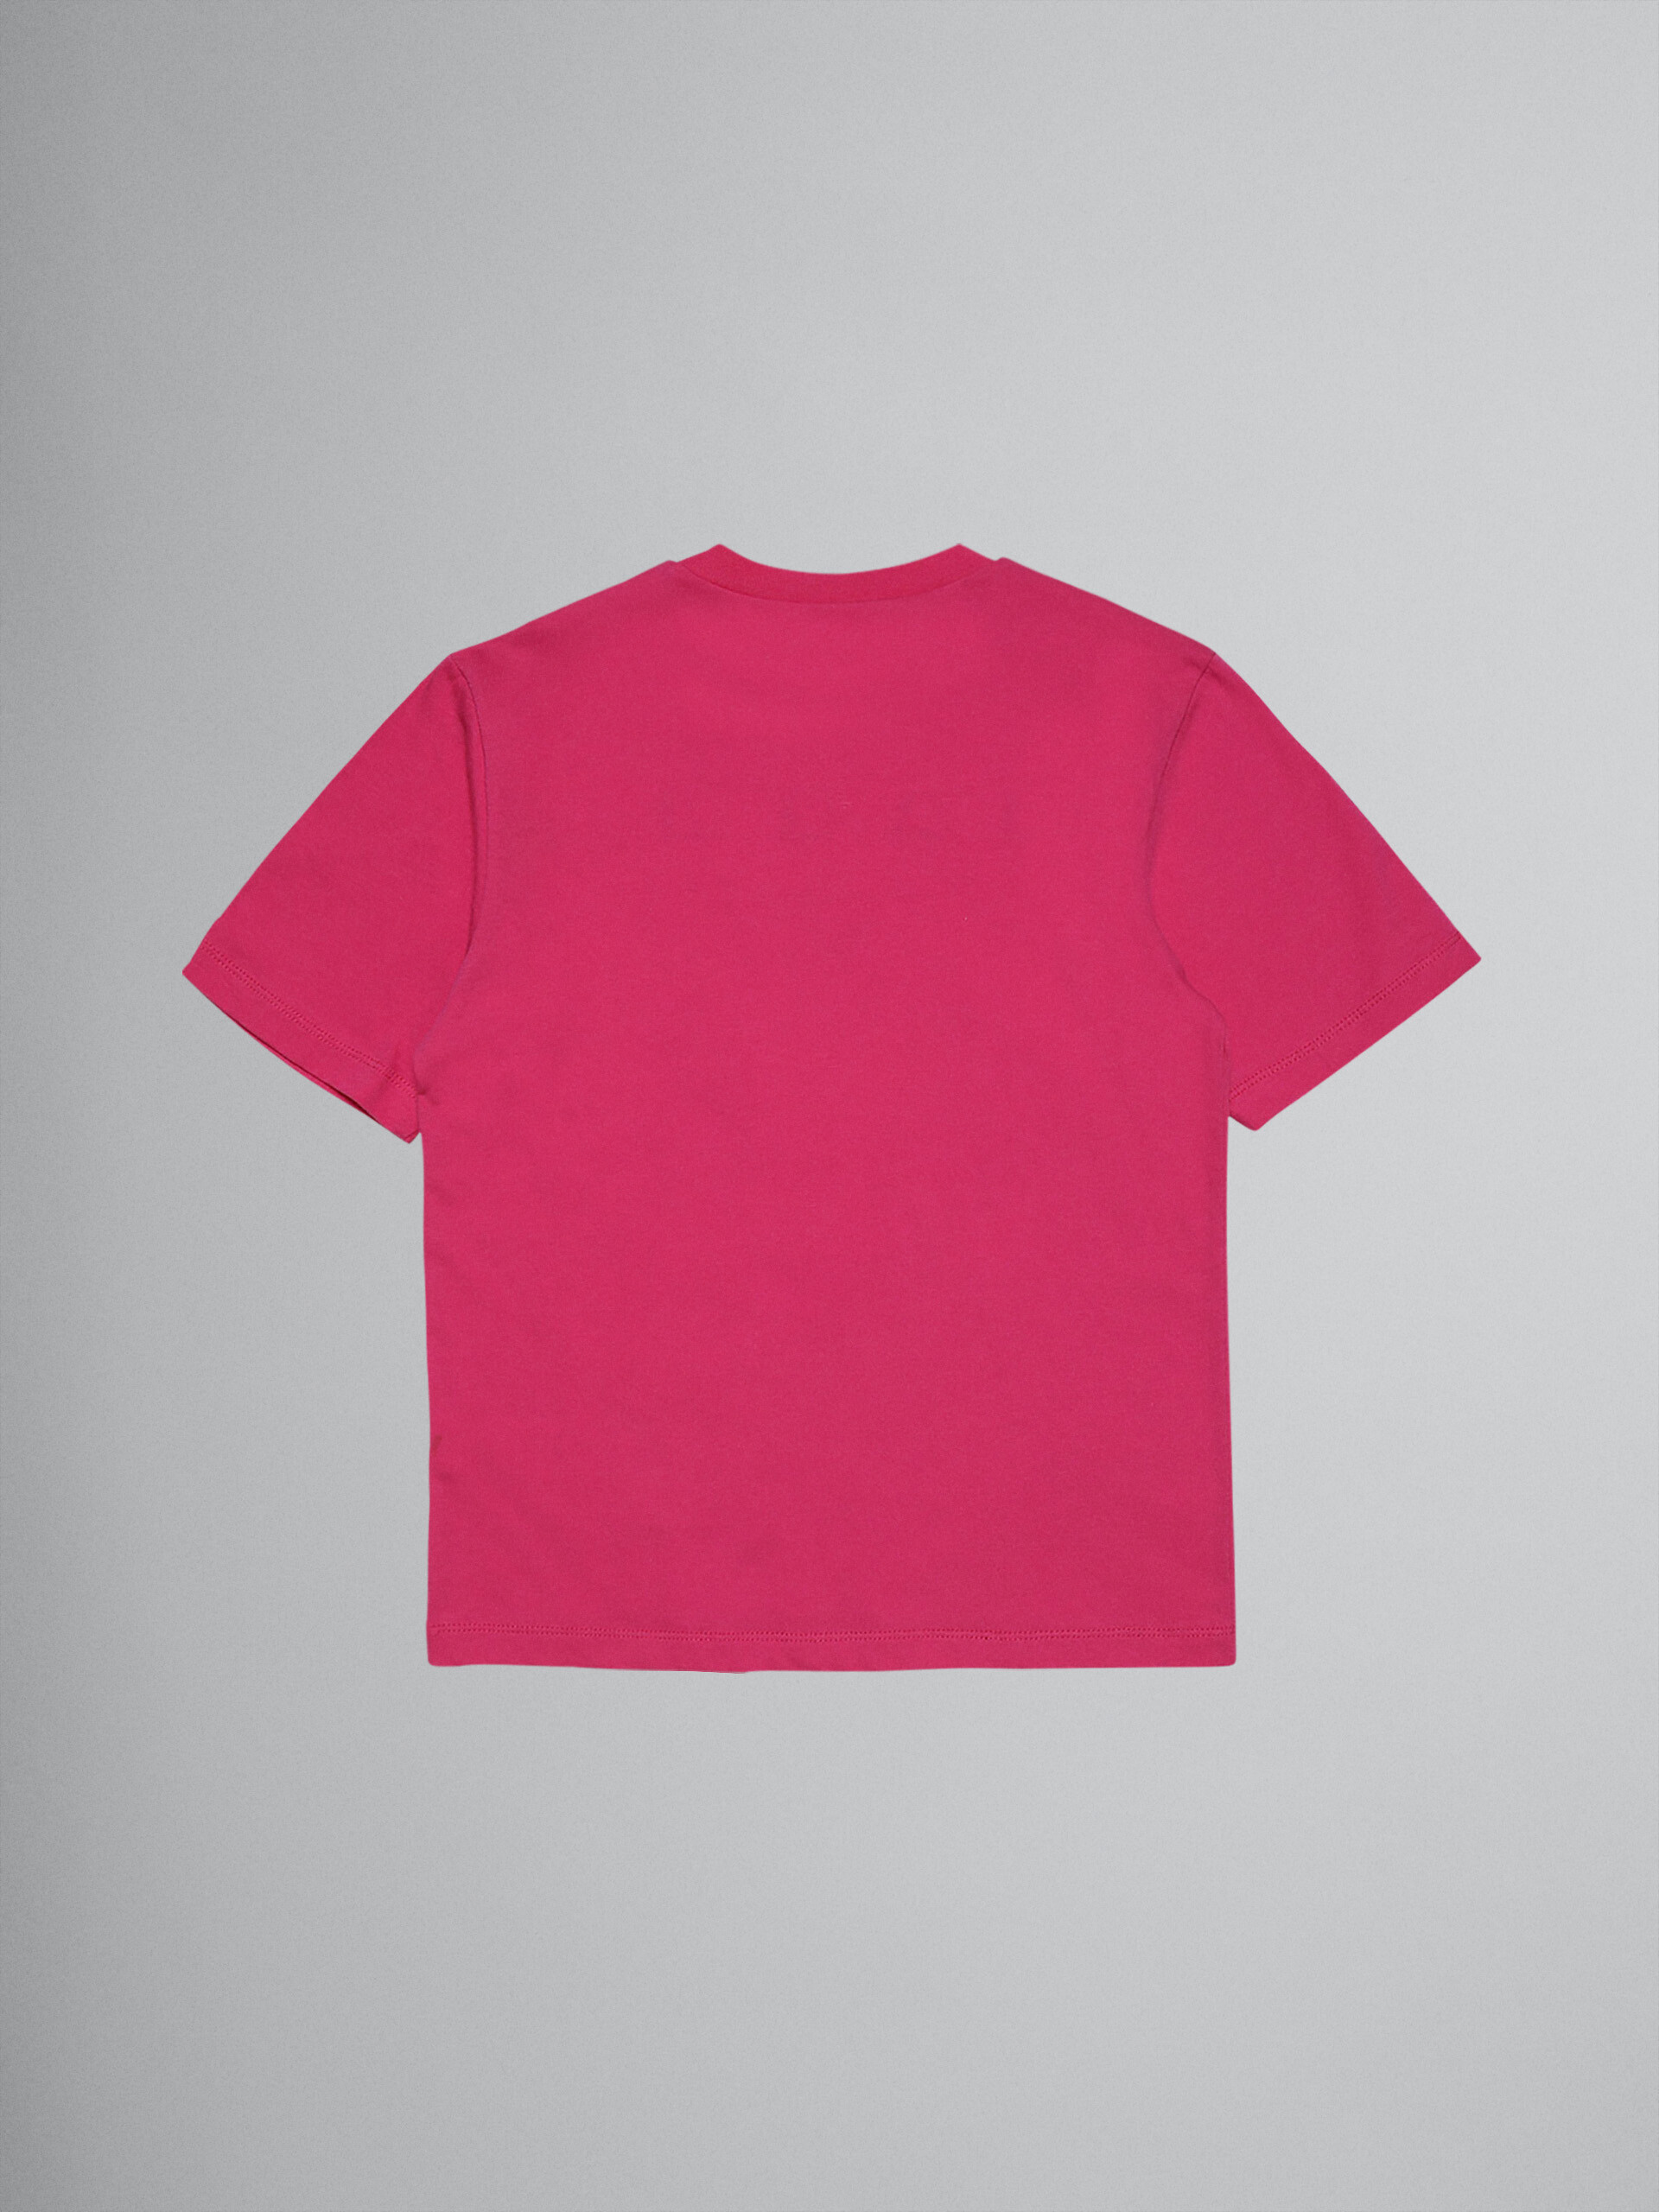 Camiseta de jersey de algodón fucsia con logotipo - Camisetas - Image 2